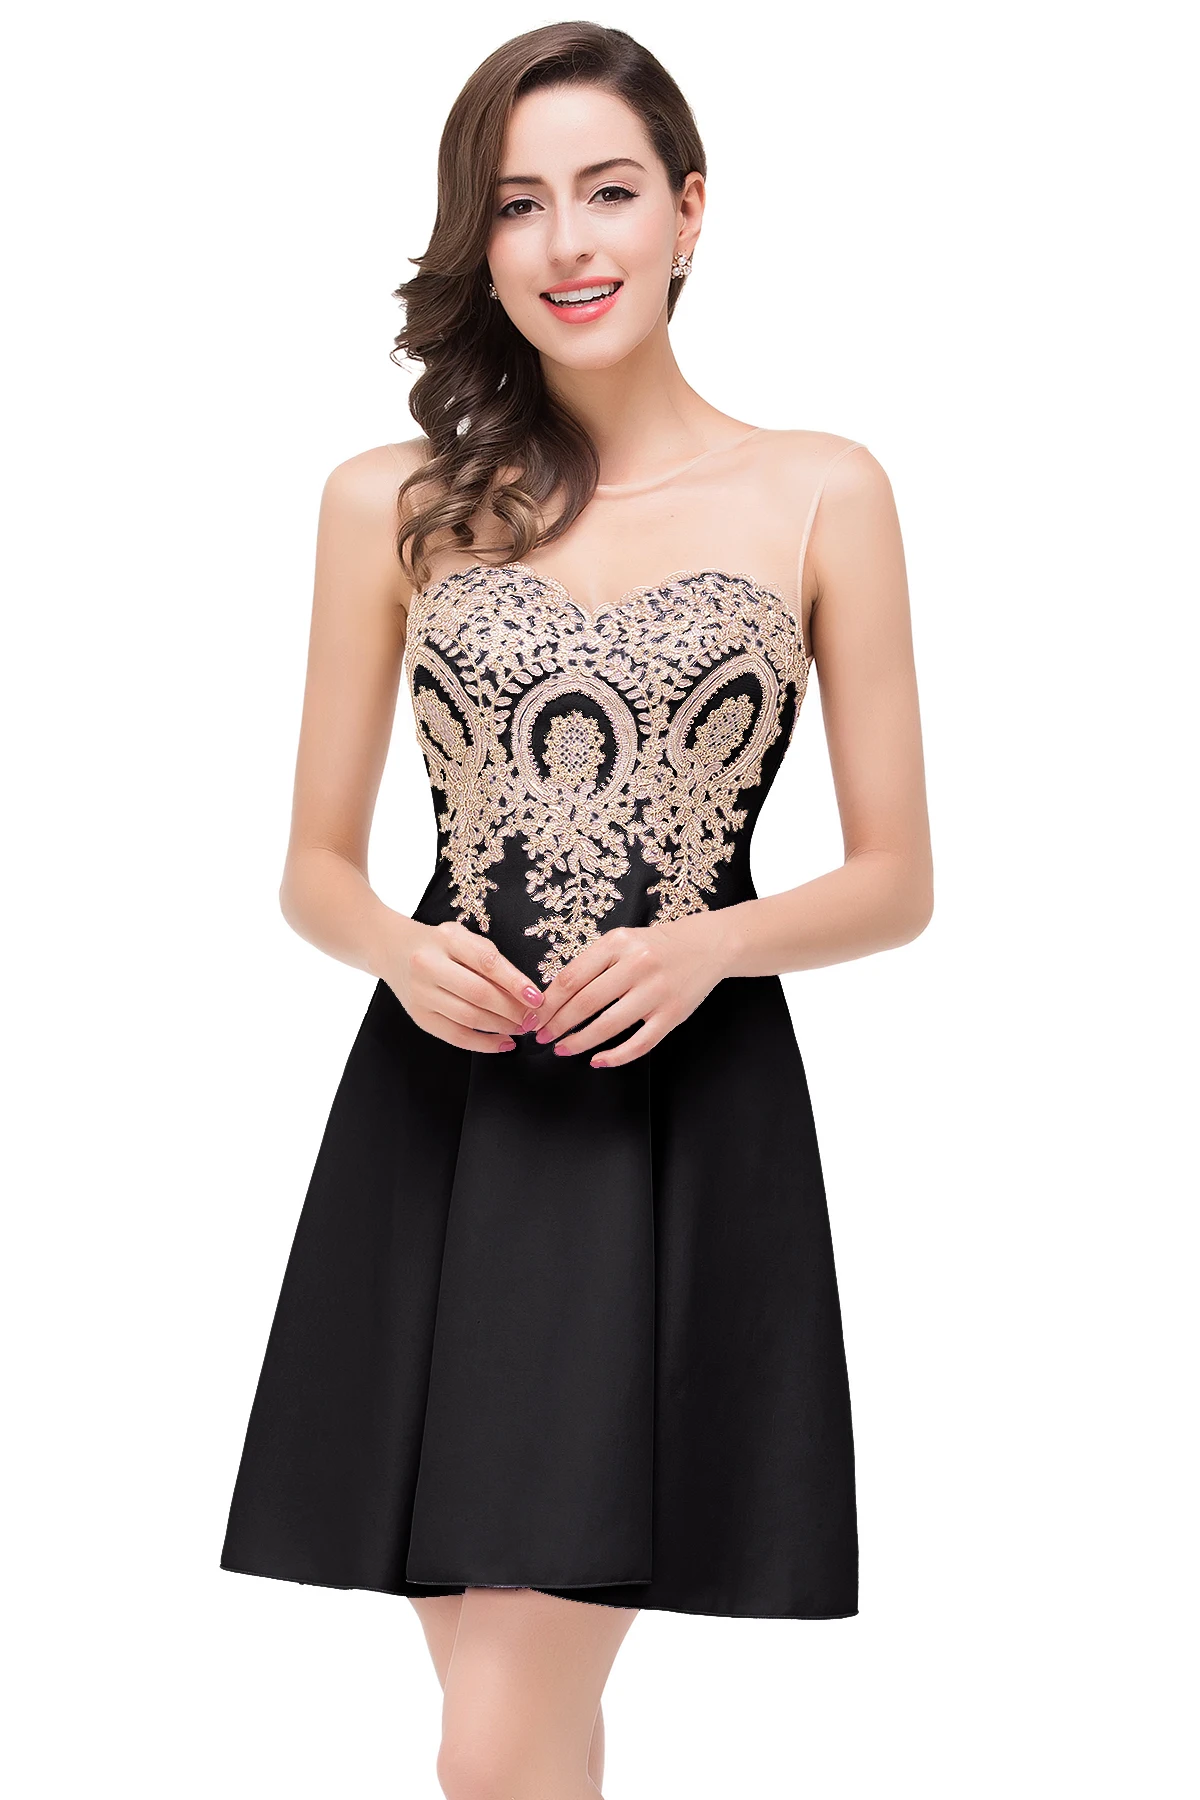 Robe de soiree вечернее платье элегантное короткое вечернее платье трапециевидной формы аппликация без рукавов вечернее платье Быстрая отправка - Цвет: Black